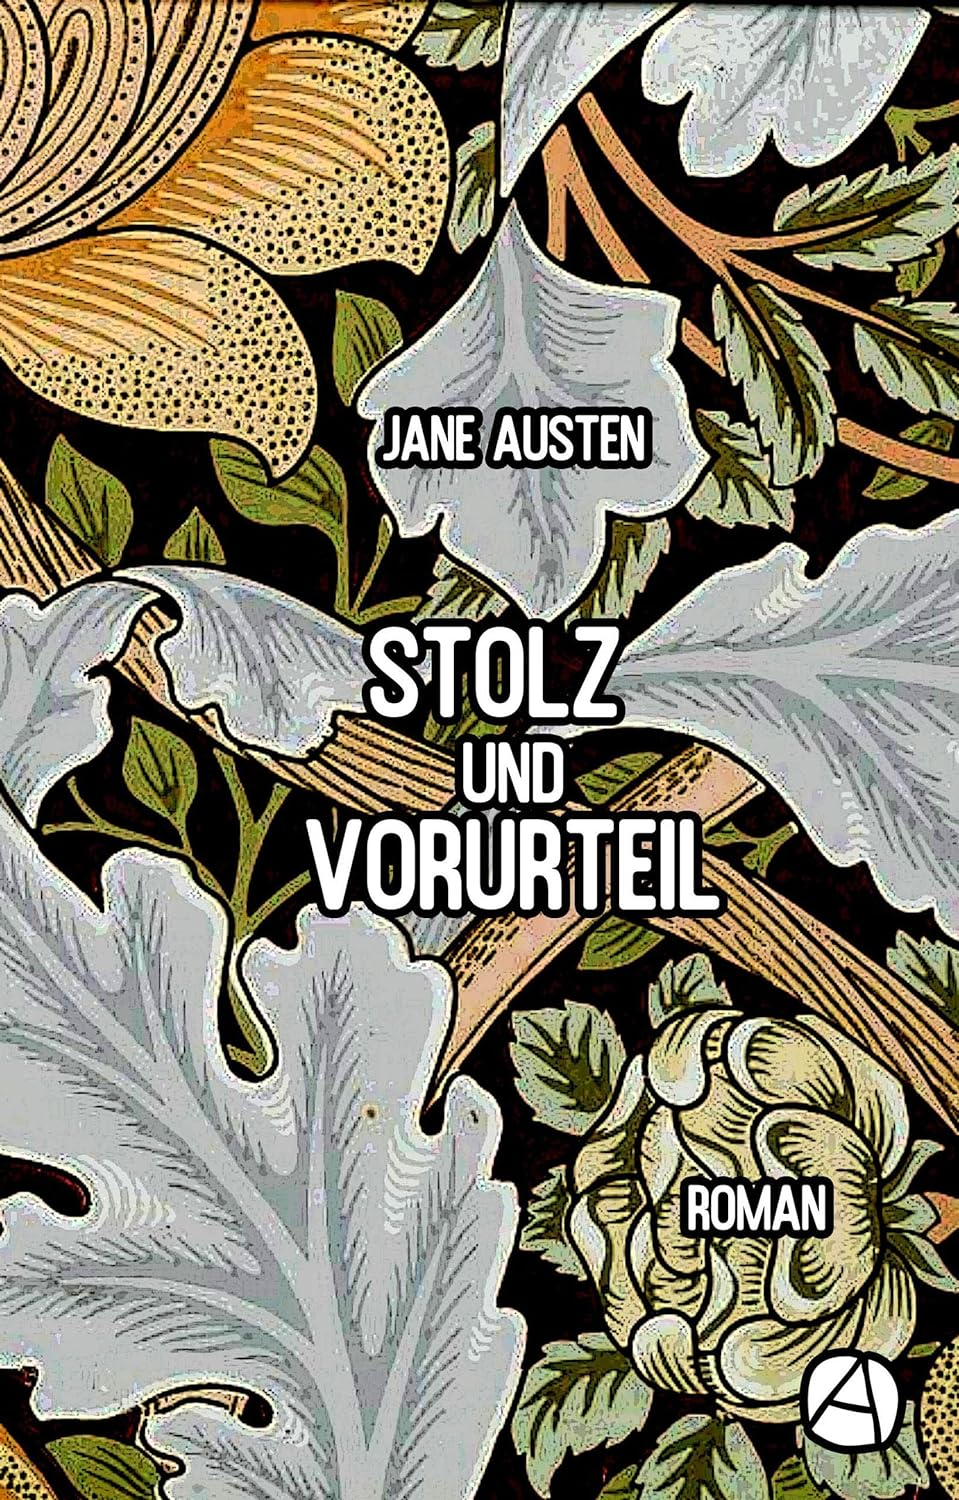 Gratis bei Amazon: Kindle-Ausgabe und Hörbuch von “Stolz und Vorurteil: Roman” (Die JANE AUSTEN Reihe 1)